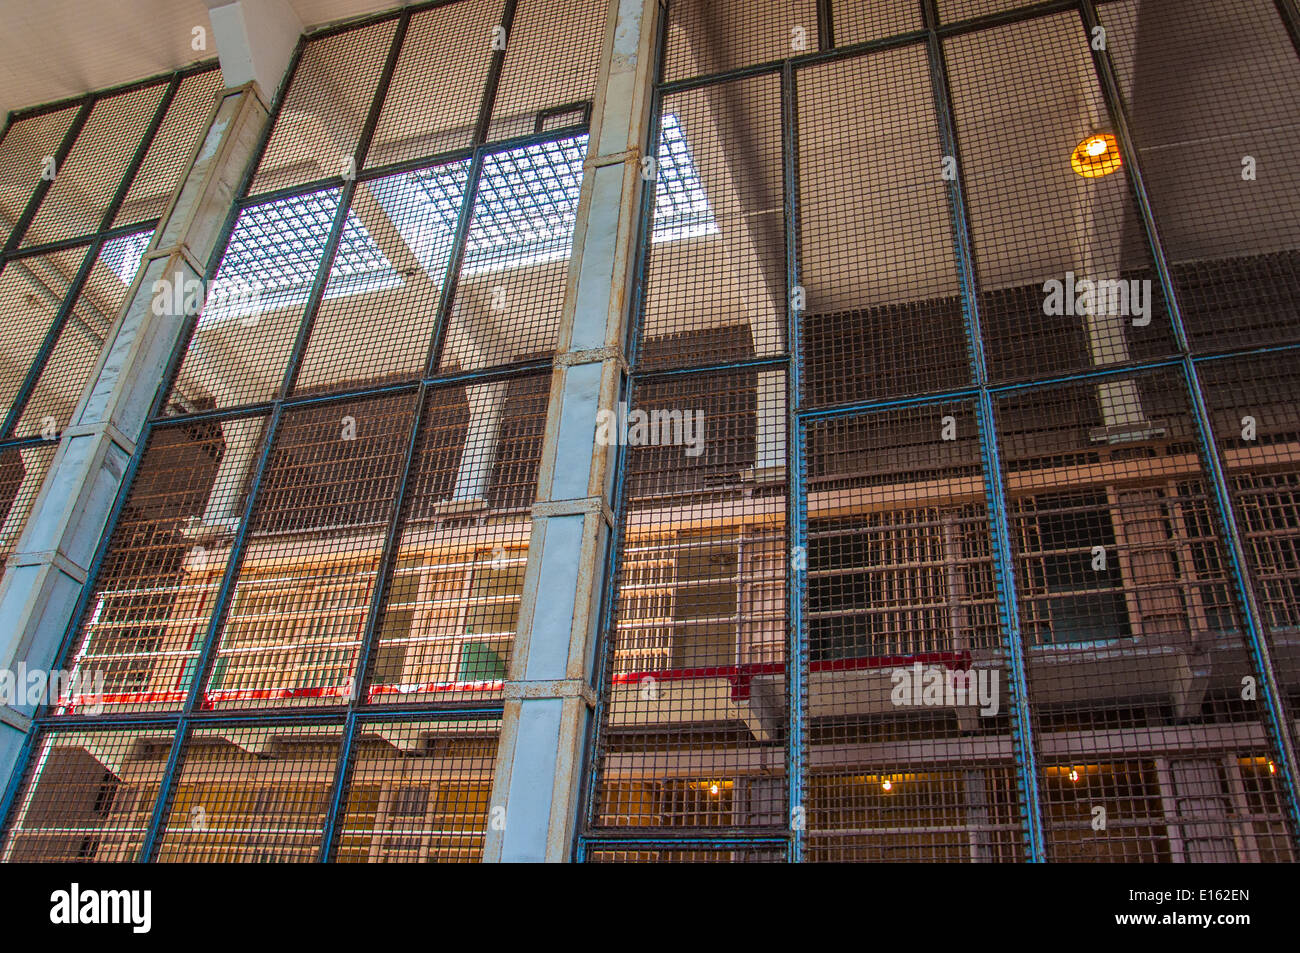 Cellgroup osservata attraverso un muro di sicurezza nella prigione di Alcatraz Foto Stock